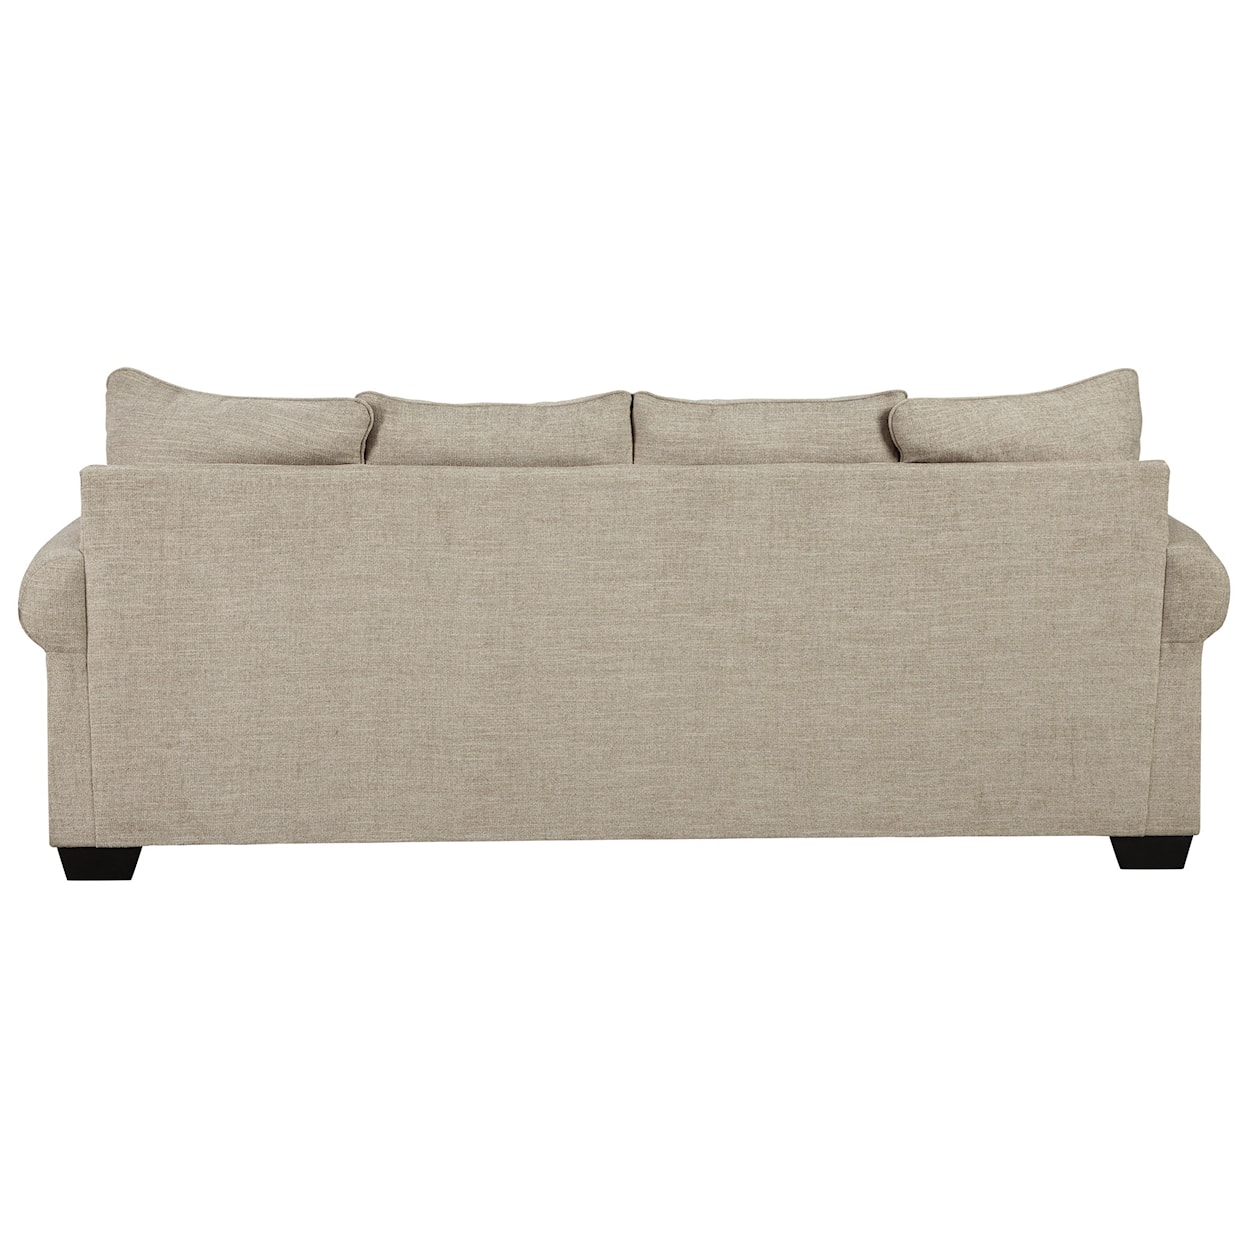 Ashley Furniture Signature Design Zarina Queen Sofa Sleeper